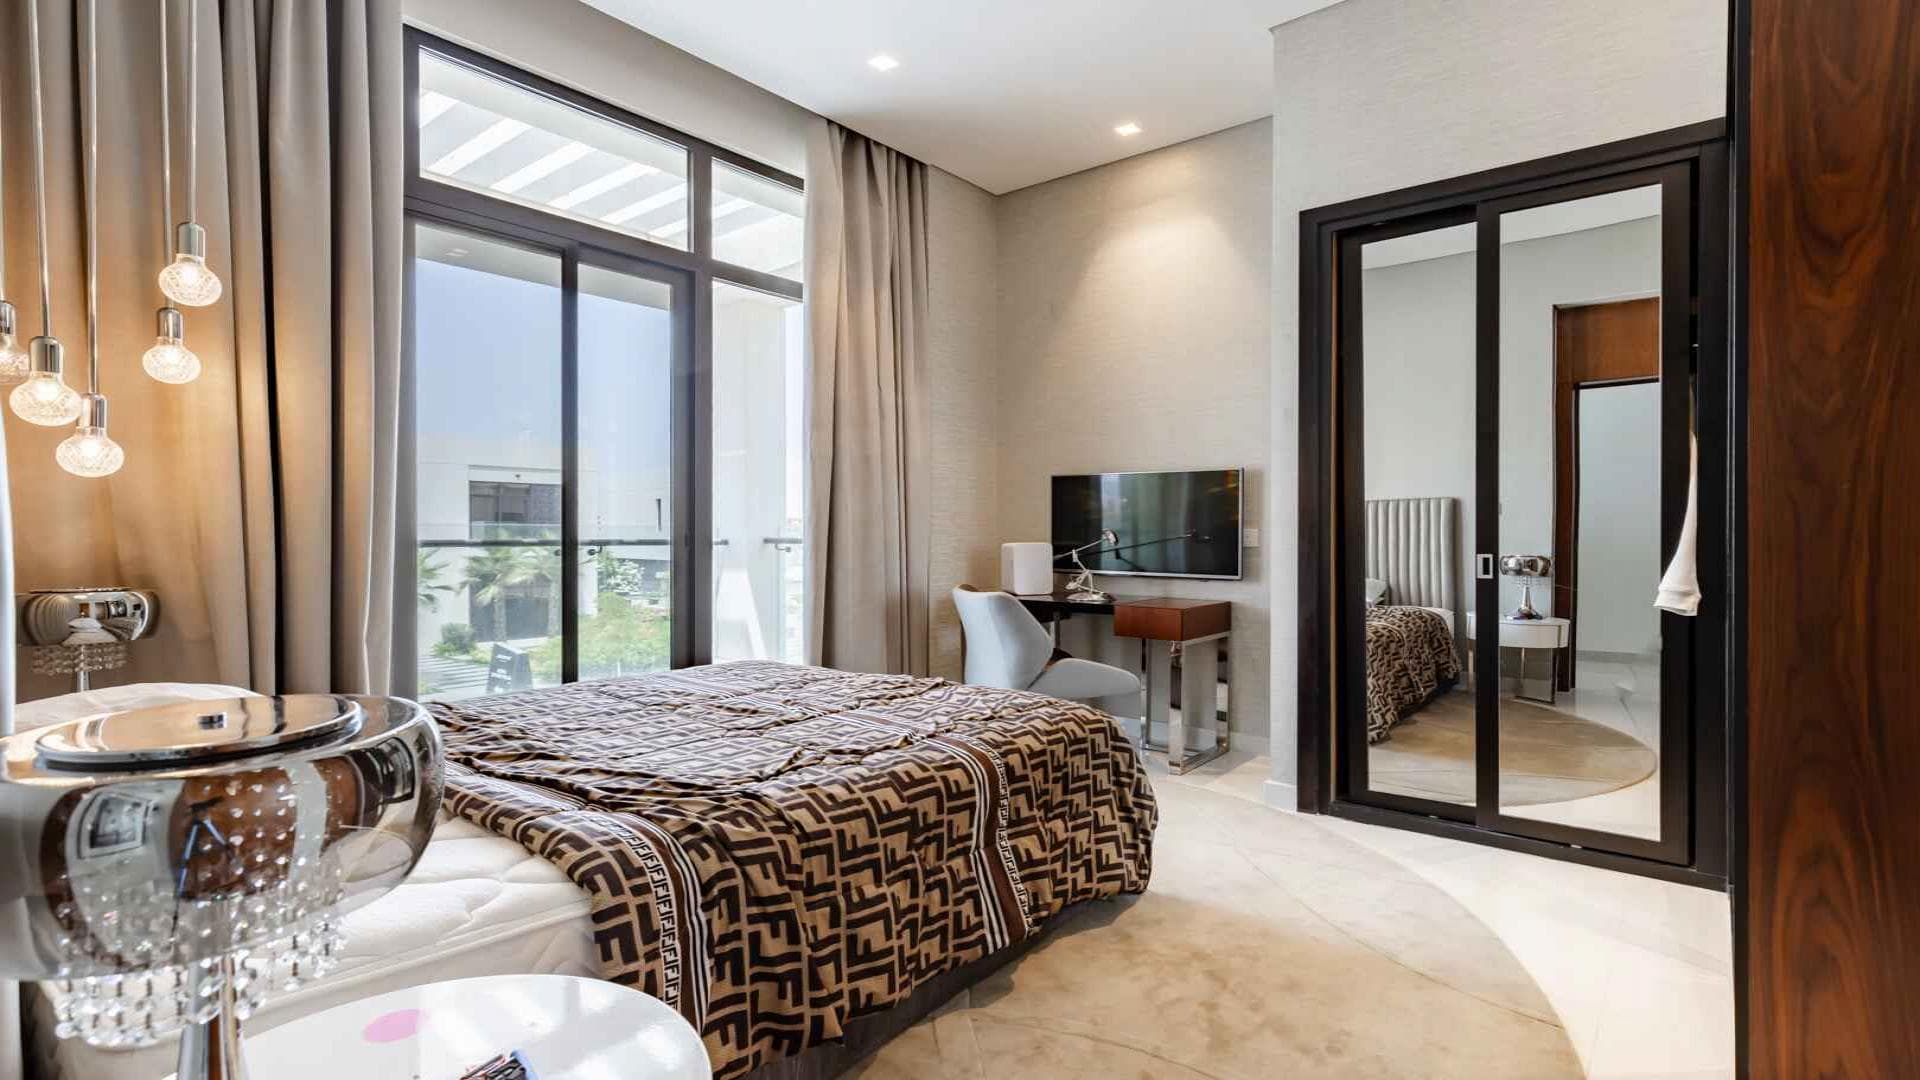 5 Bedroom Villa For Rent Tasameem Tower 1 Lp37388 1f67f16d717cb600.jpg